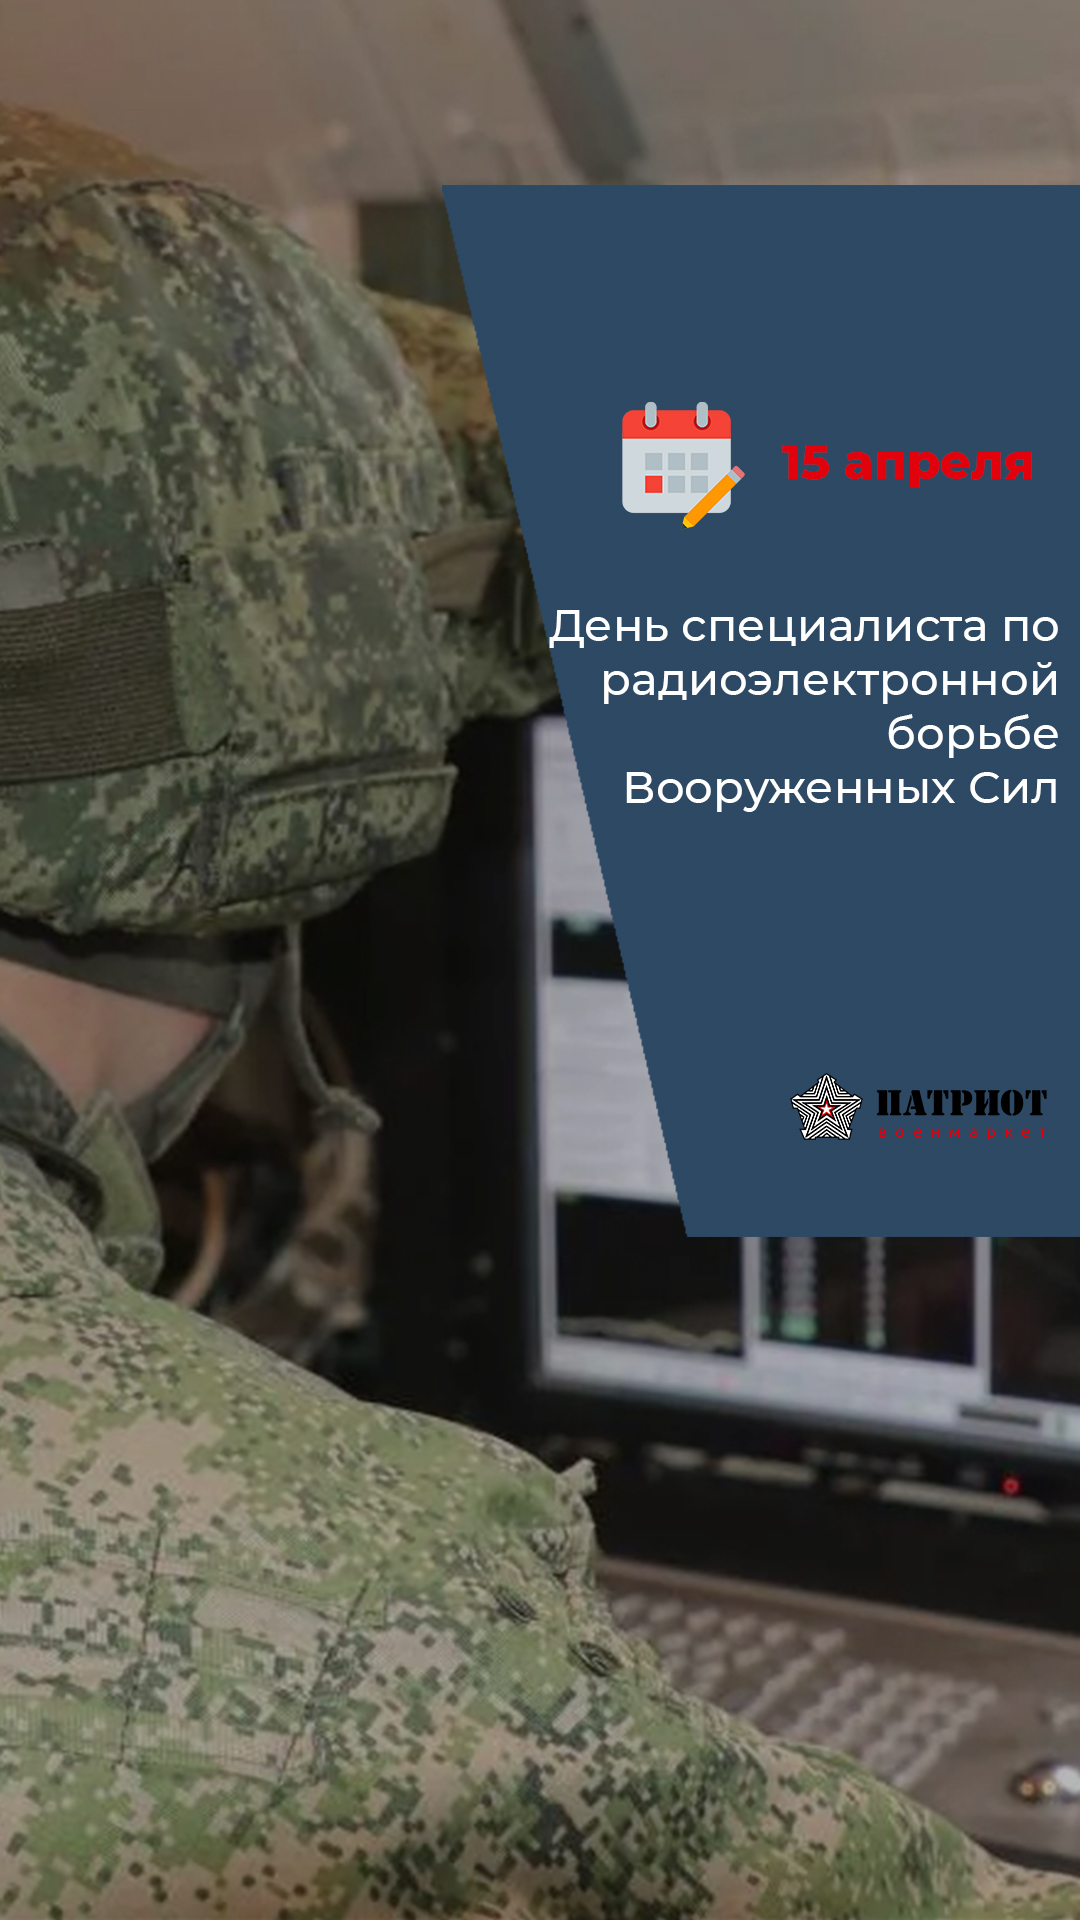 15 апреля -День специалиста по радиоэлектронной борьбе Вооруженных Сил России